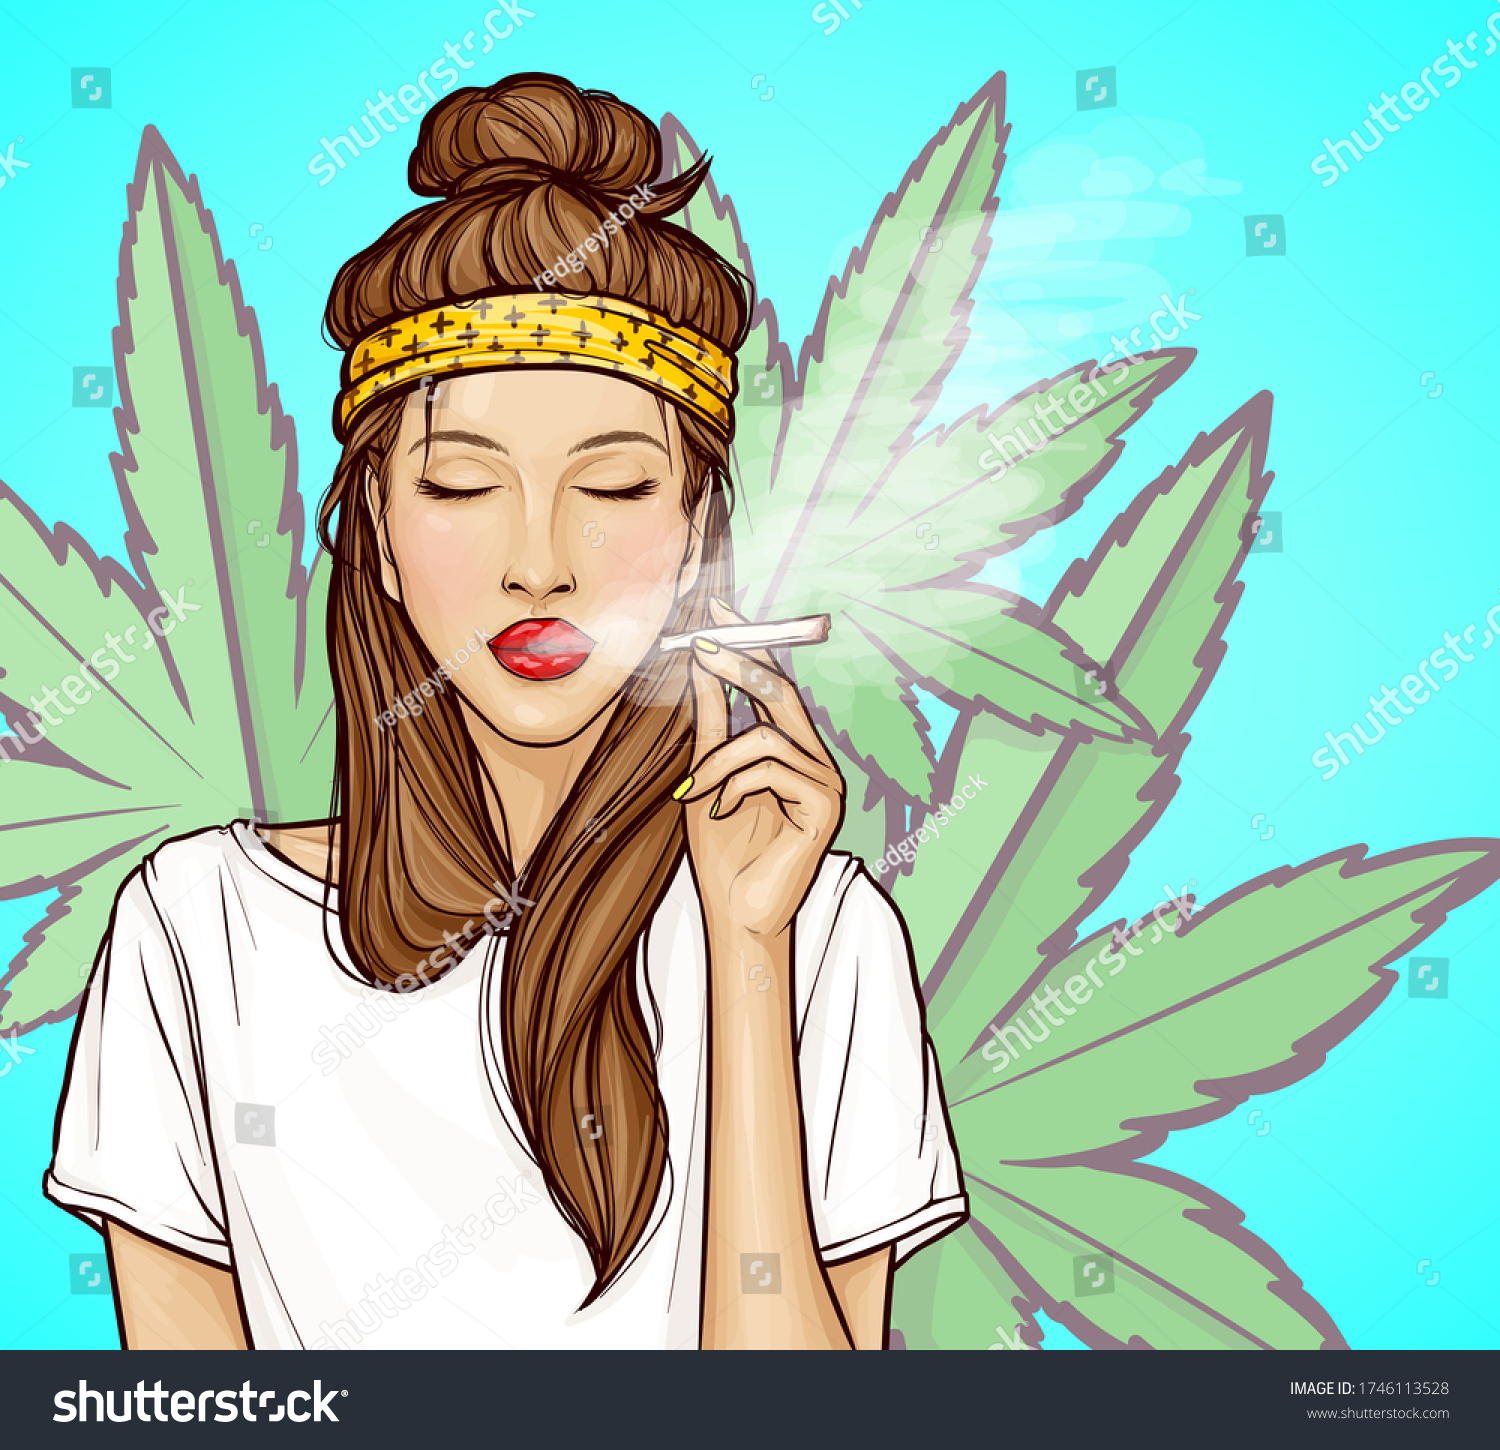 Download Free 100 Girl Smoking Weed Art Wallpapers